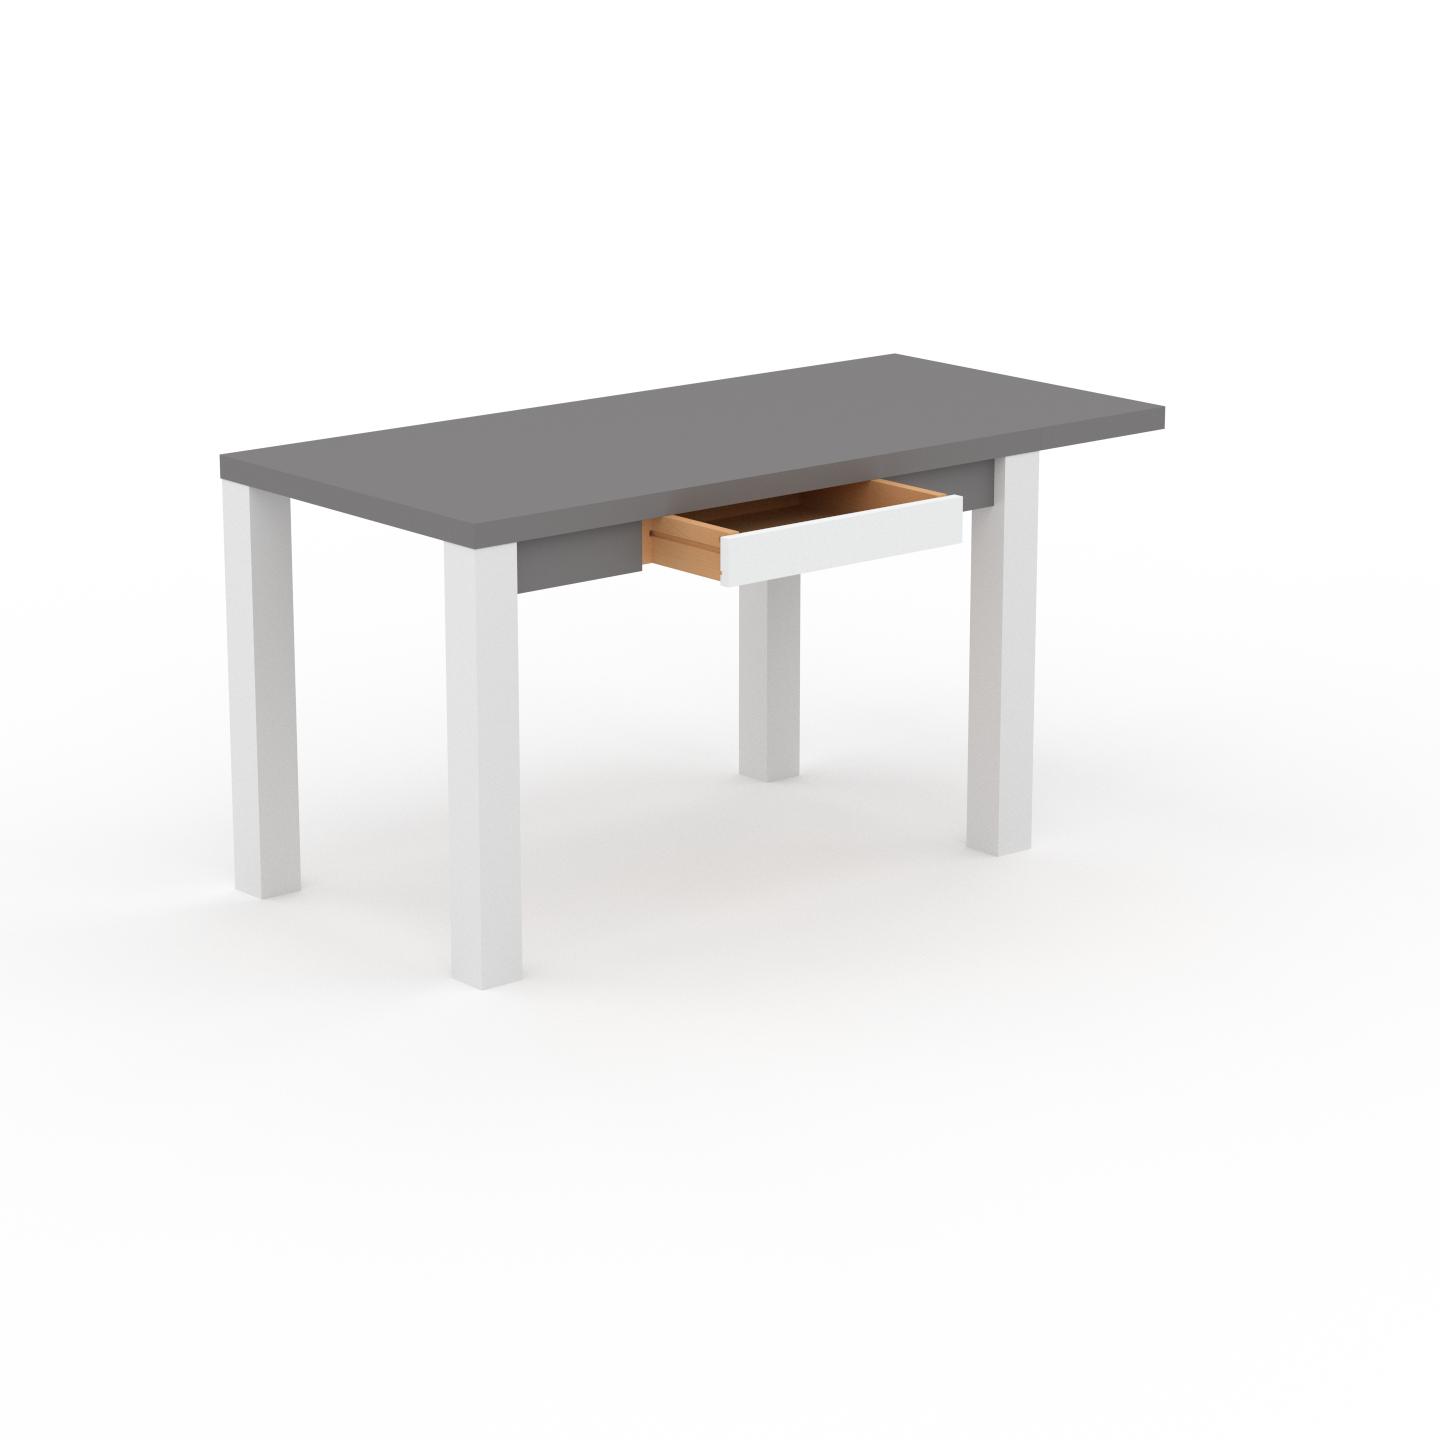 MYCS Schreibtisch Massivholz Grau - Massivholz-Schreibtisch: mit 1 Schublade/n & Tischrahmen - Hochwertige Materialien - 150 x 76 x 70 cm, konfigurierbar